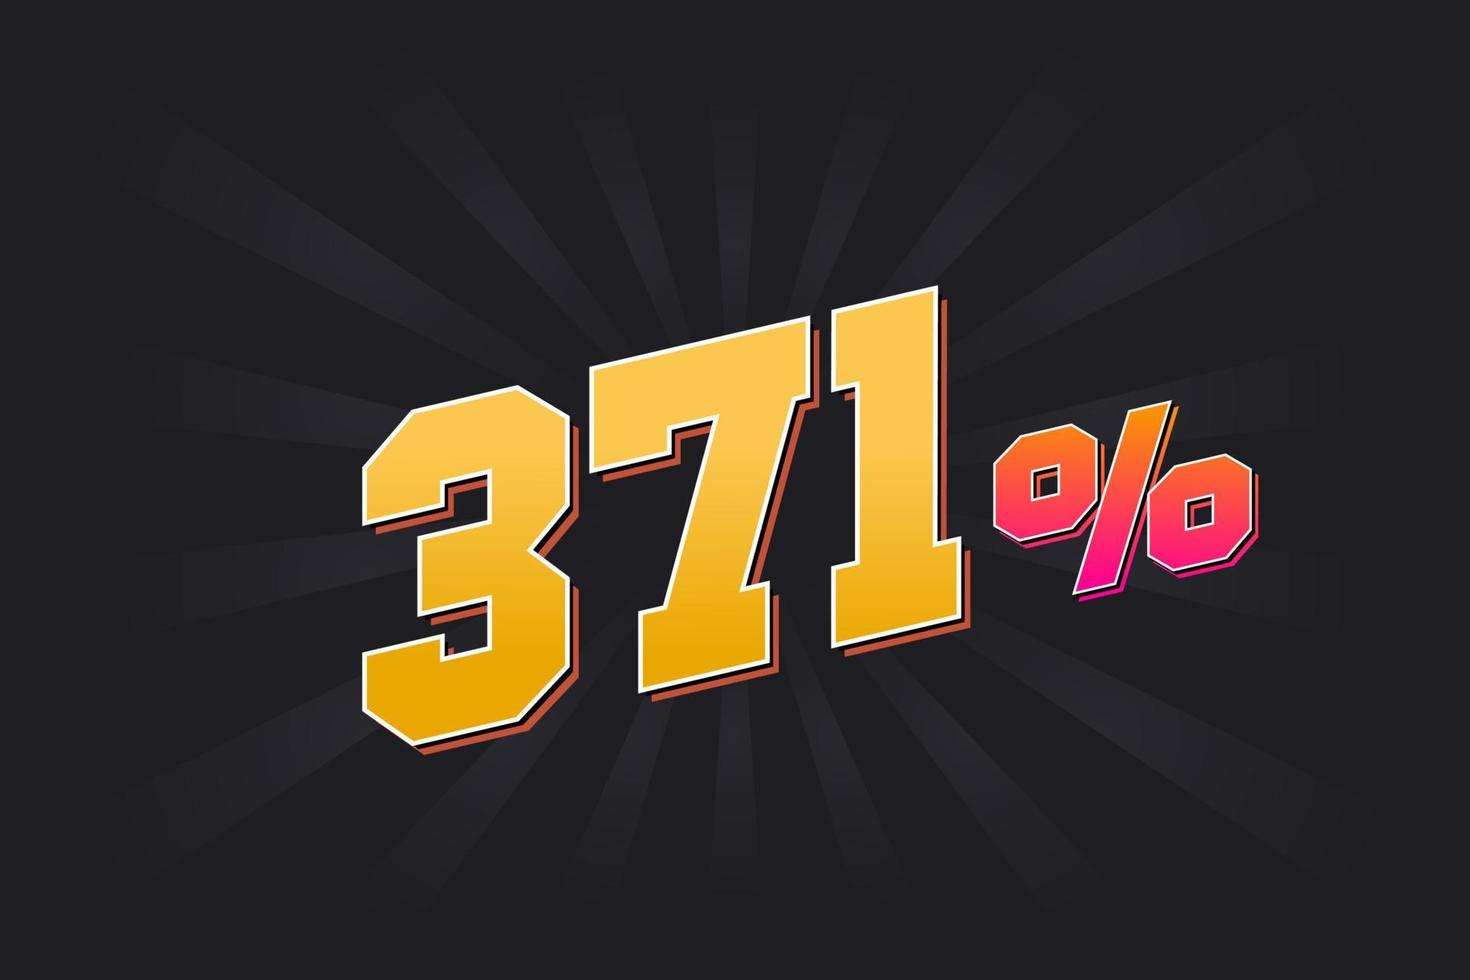 Banner de descuento 371 con fondo oscuro y texto amarillo. 371 por ciento de diseño promocional de ventas. vector